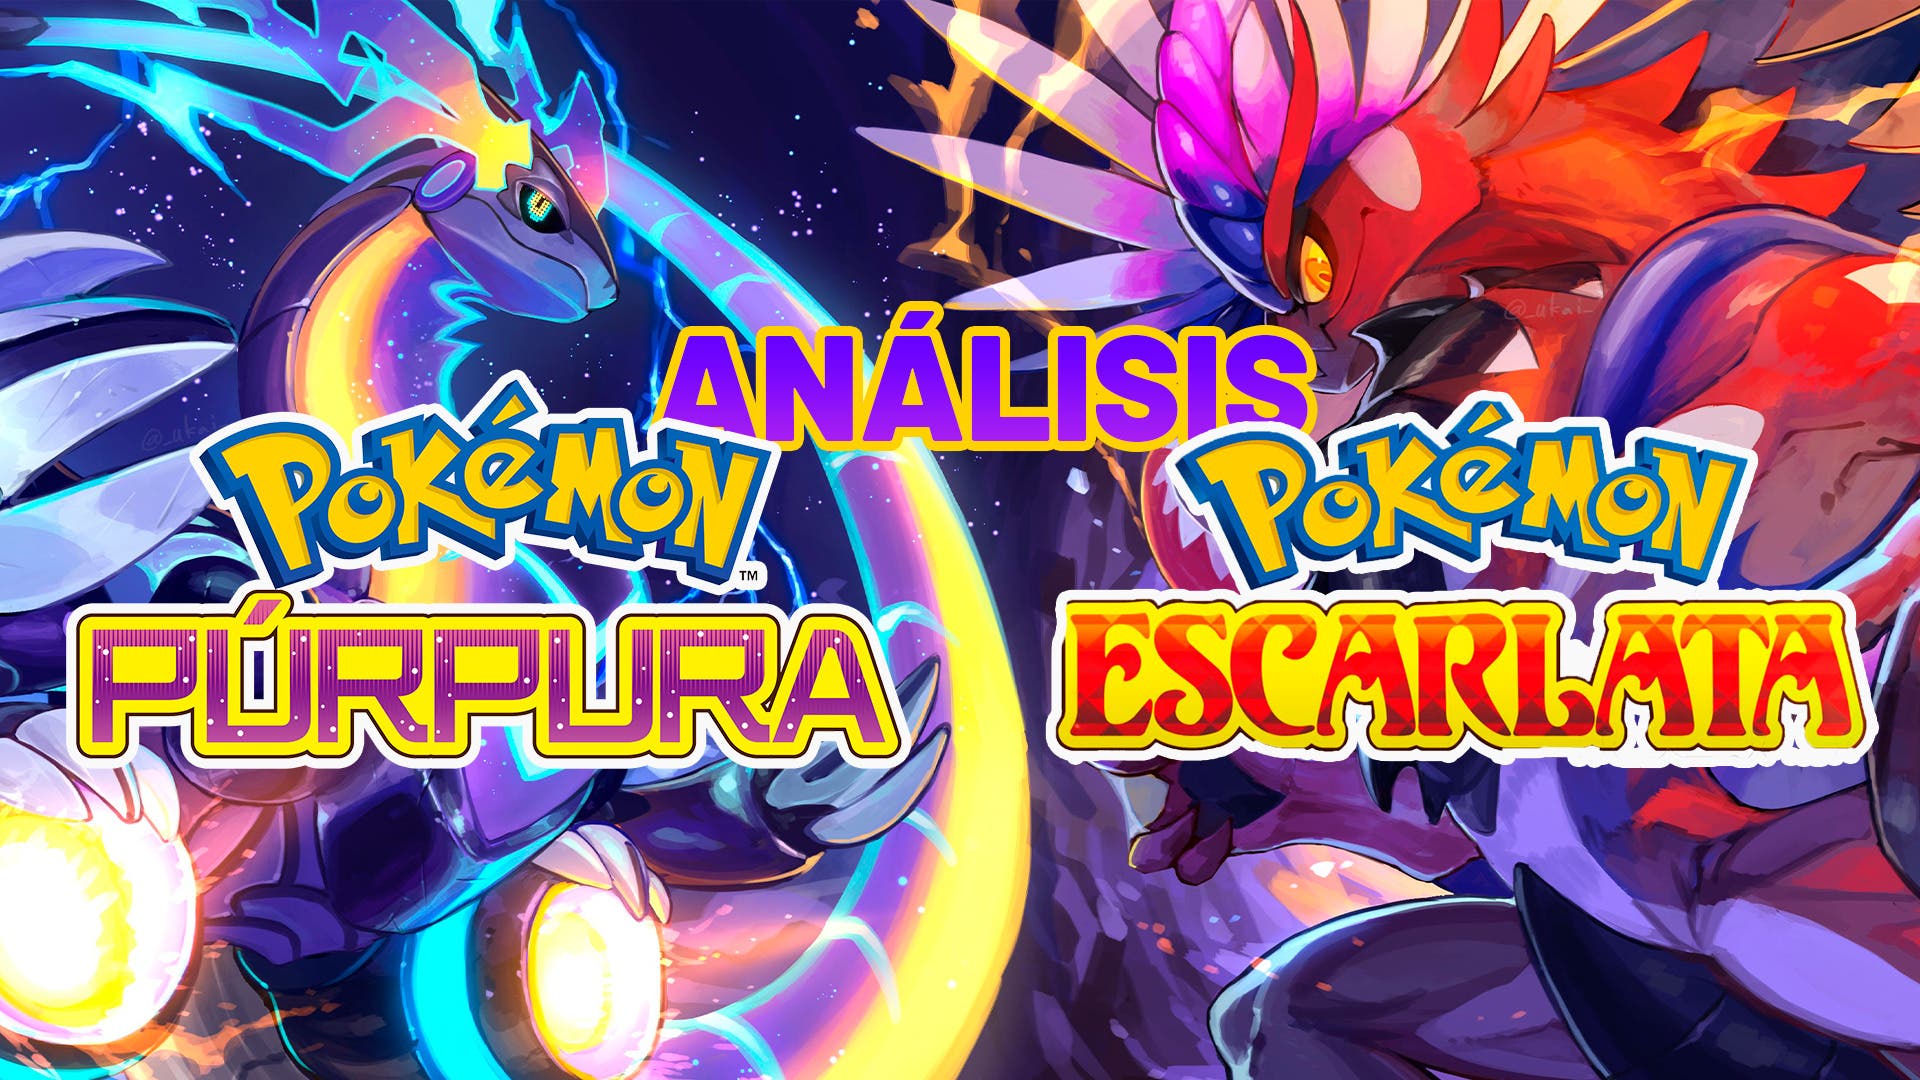 Pokémon Escarlata y Púrpura: El mejor equipo para superar la